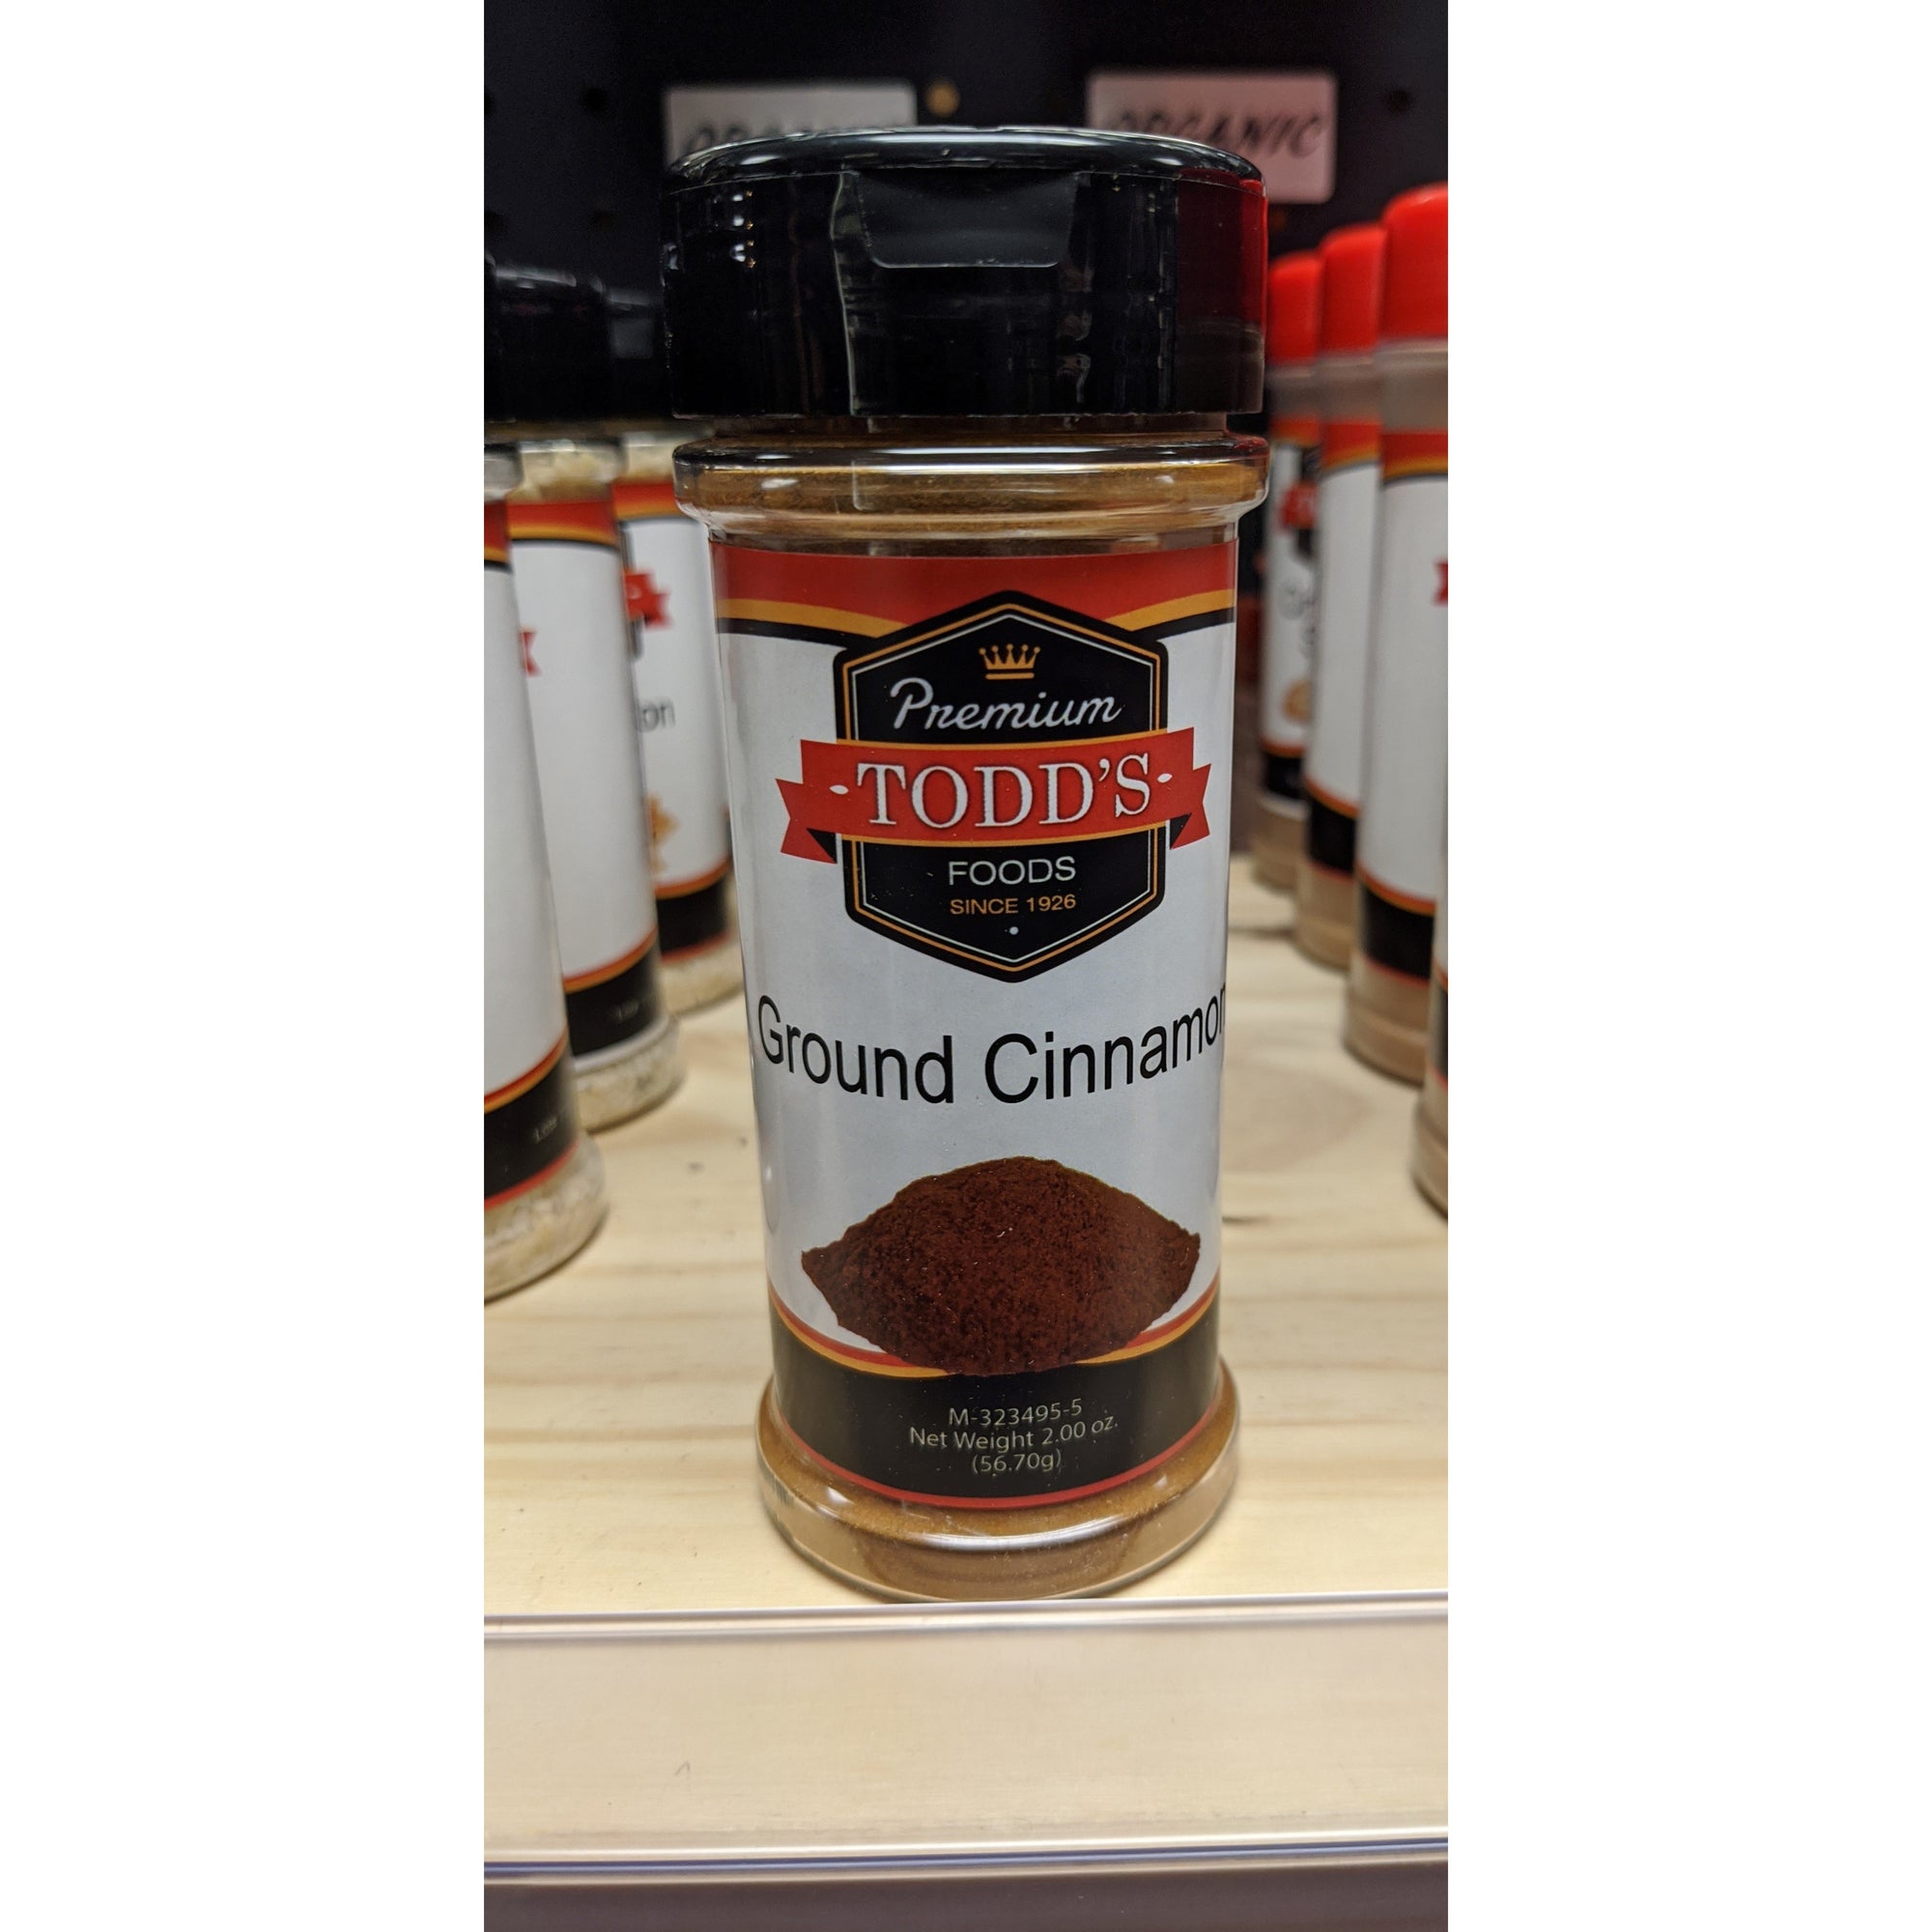 Todd's Premium Foods Spice Jars